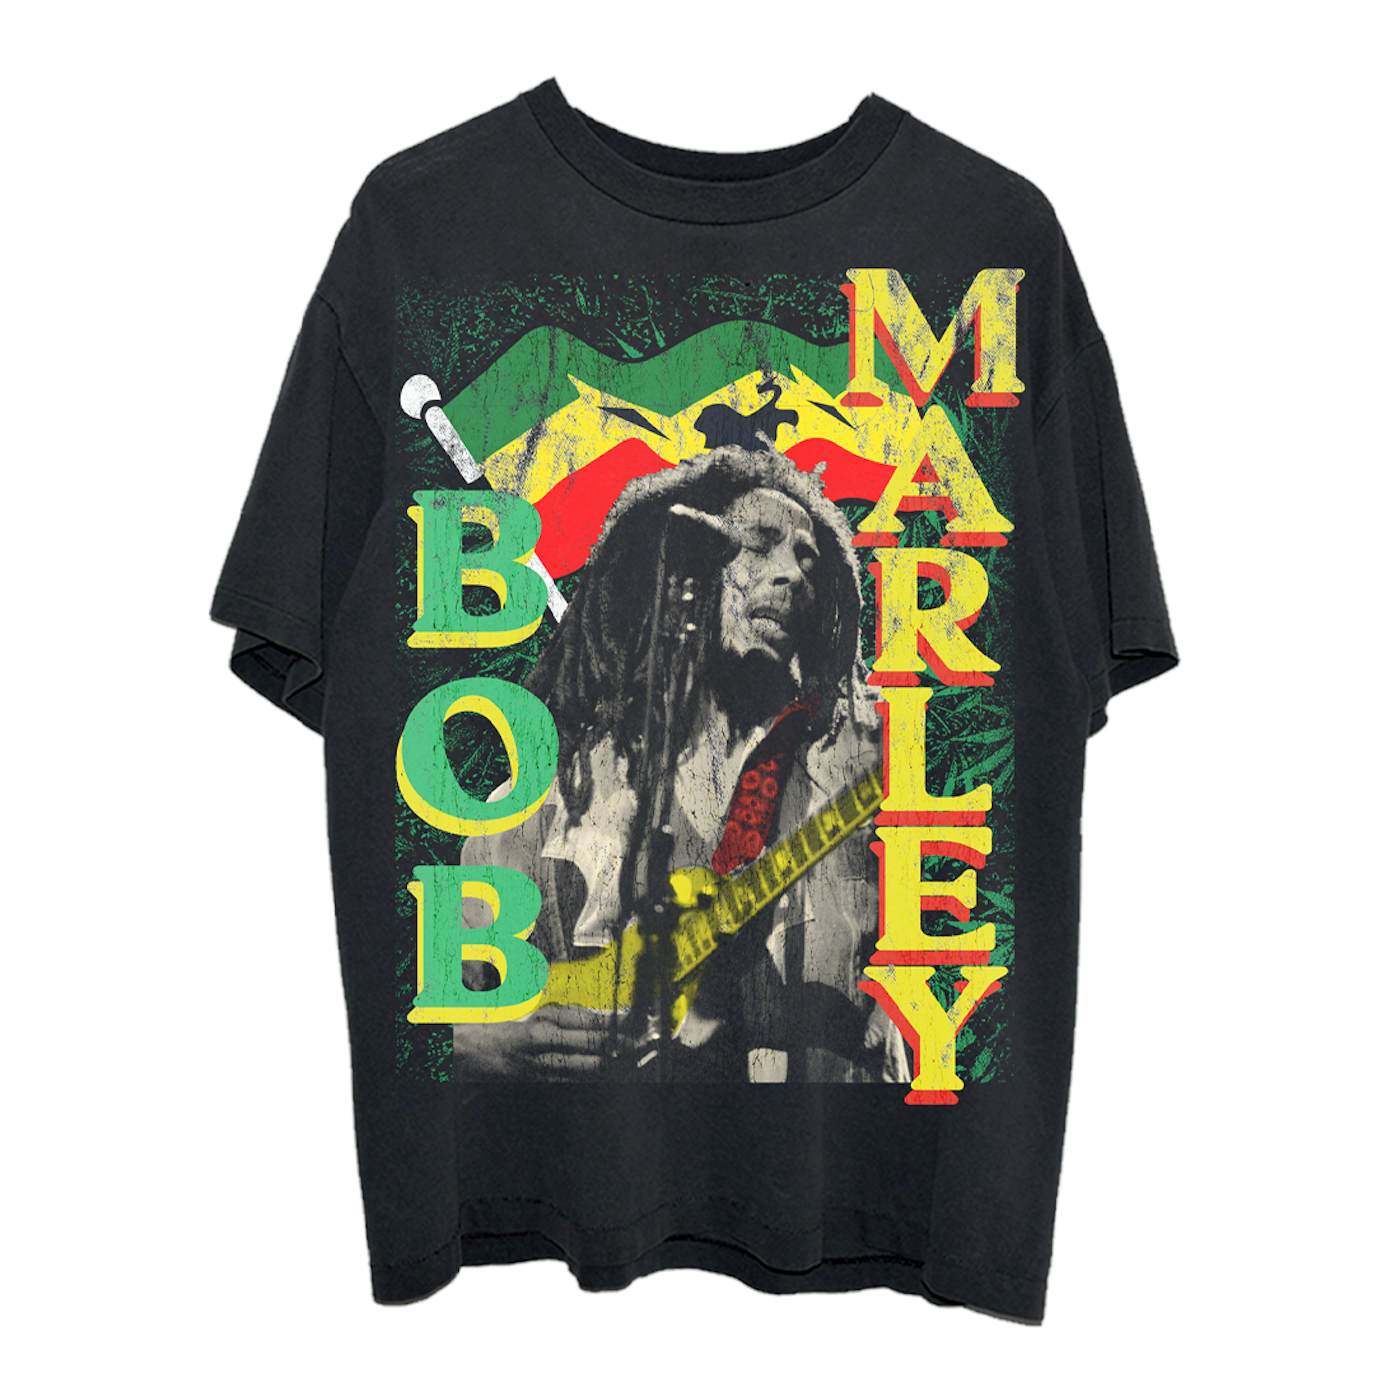 Bob Marley - T-Shirt - Bob Marley (Black) (Bolur)